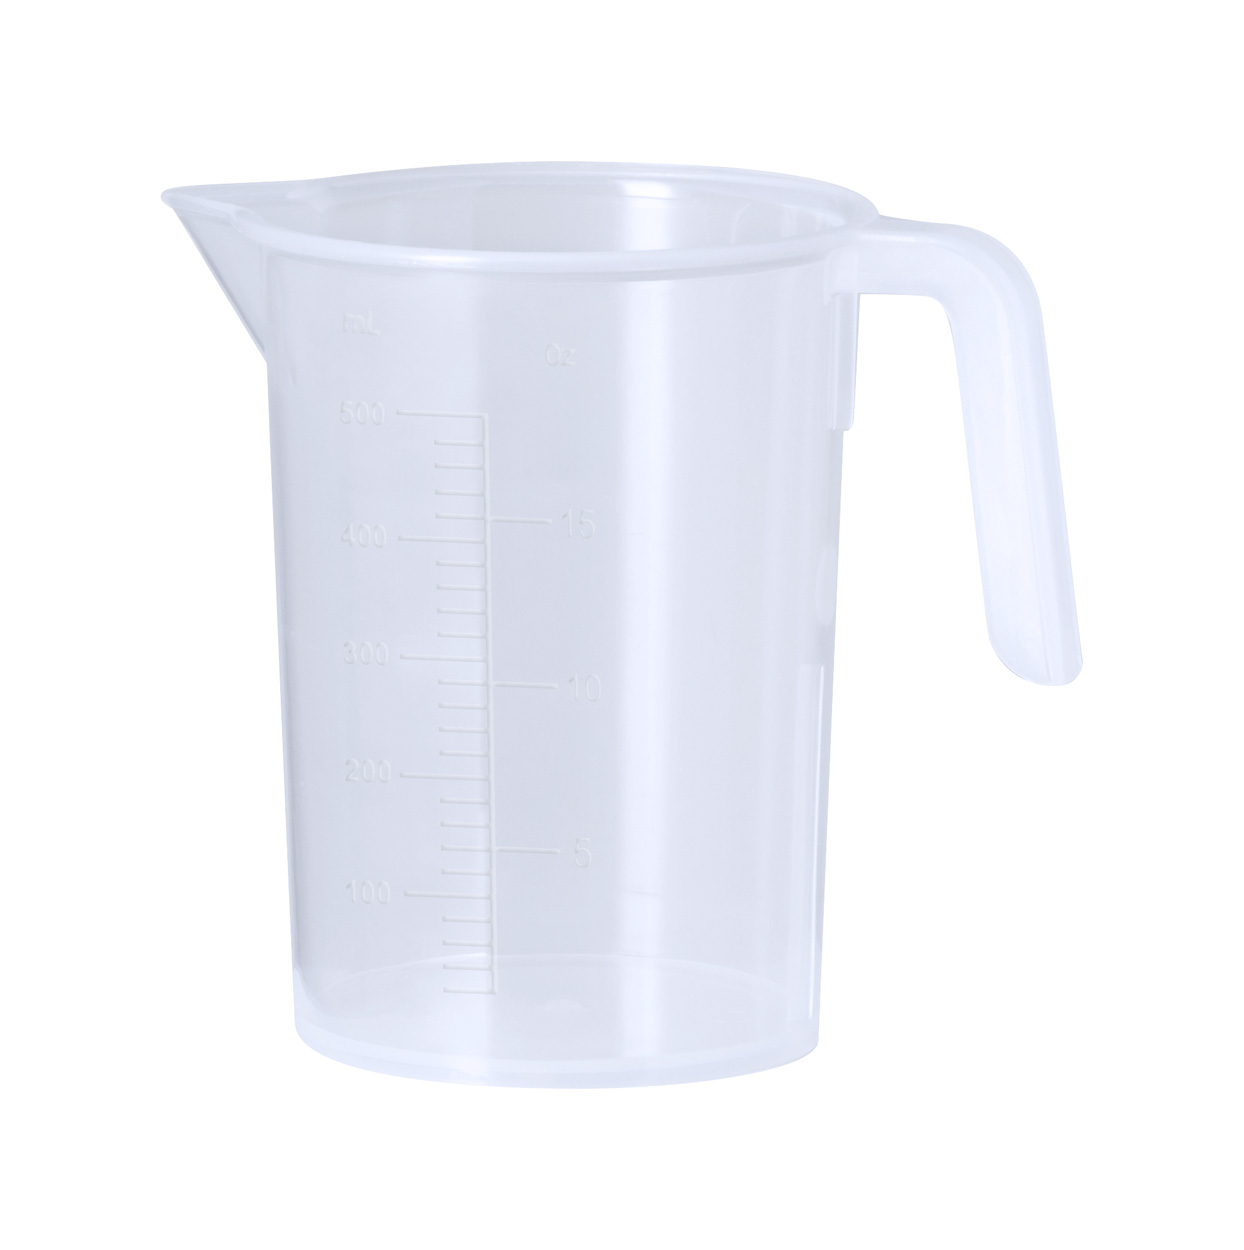 Ladex measuring cup - Transparente